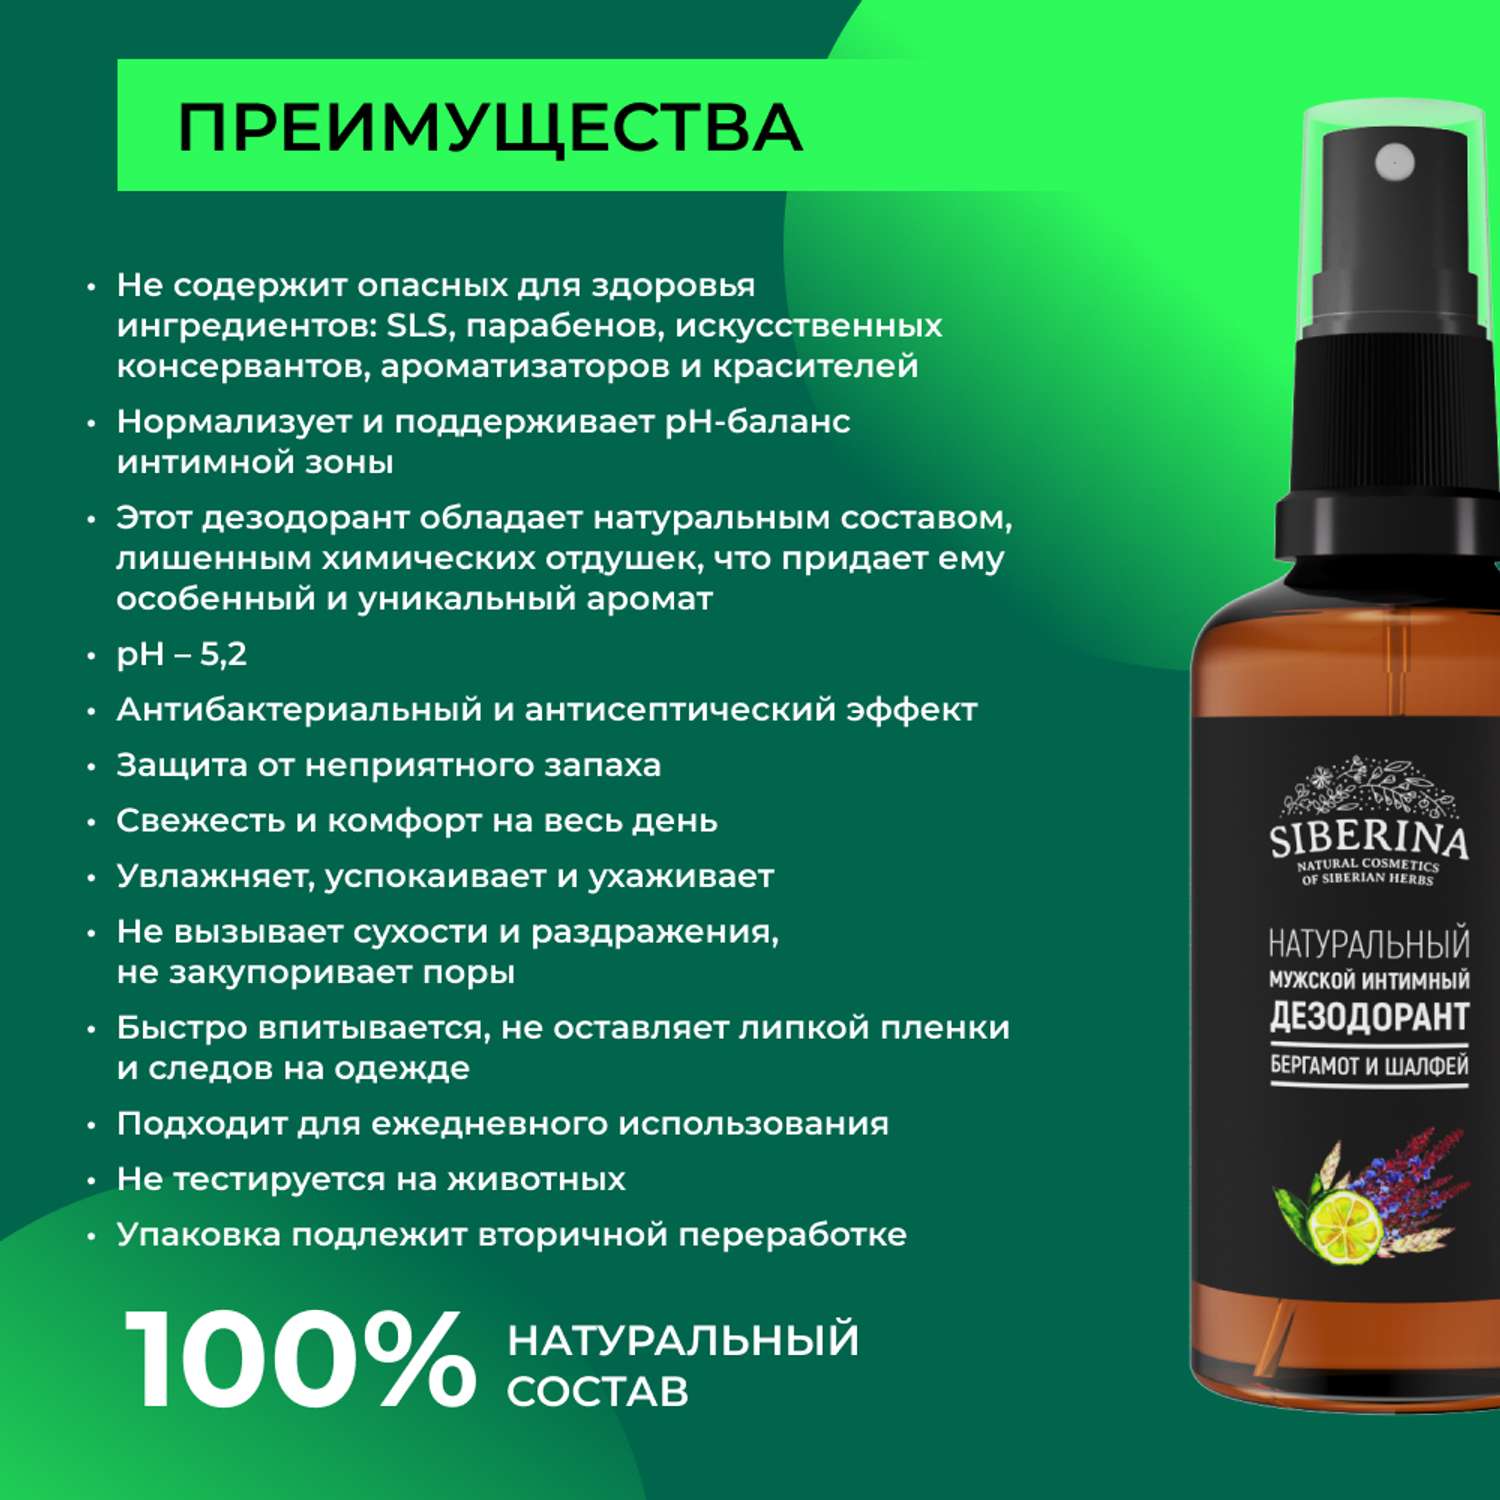 Интимный дезодорант Siberina натуральный «Бергамот и шалфей» мужской 50 мл - фото 3